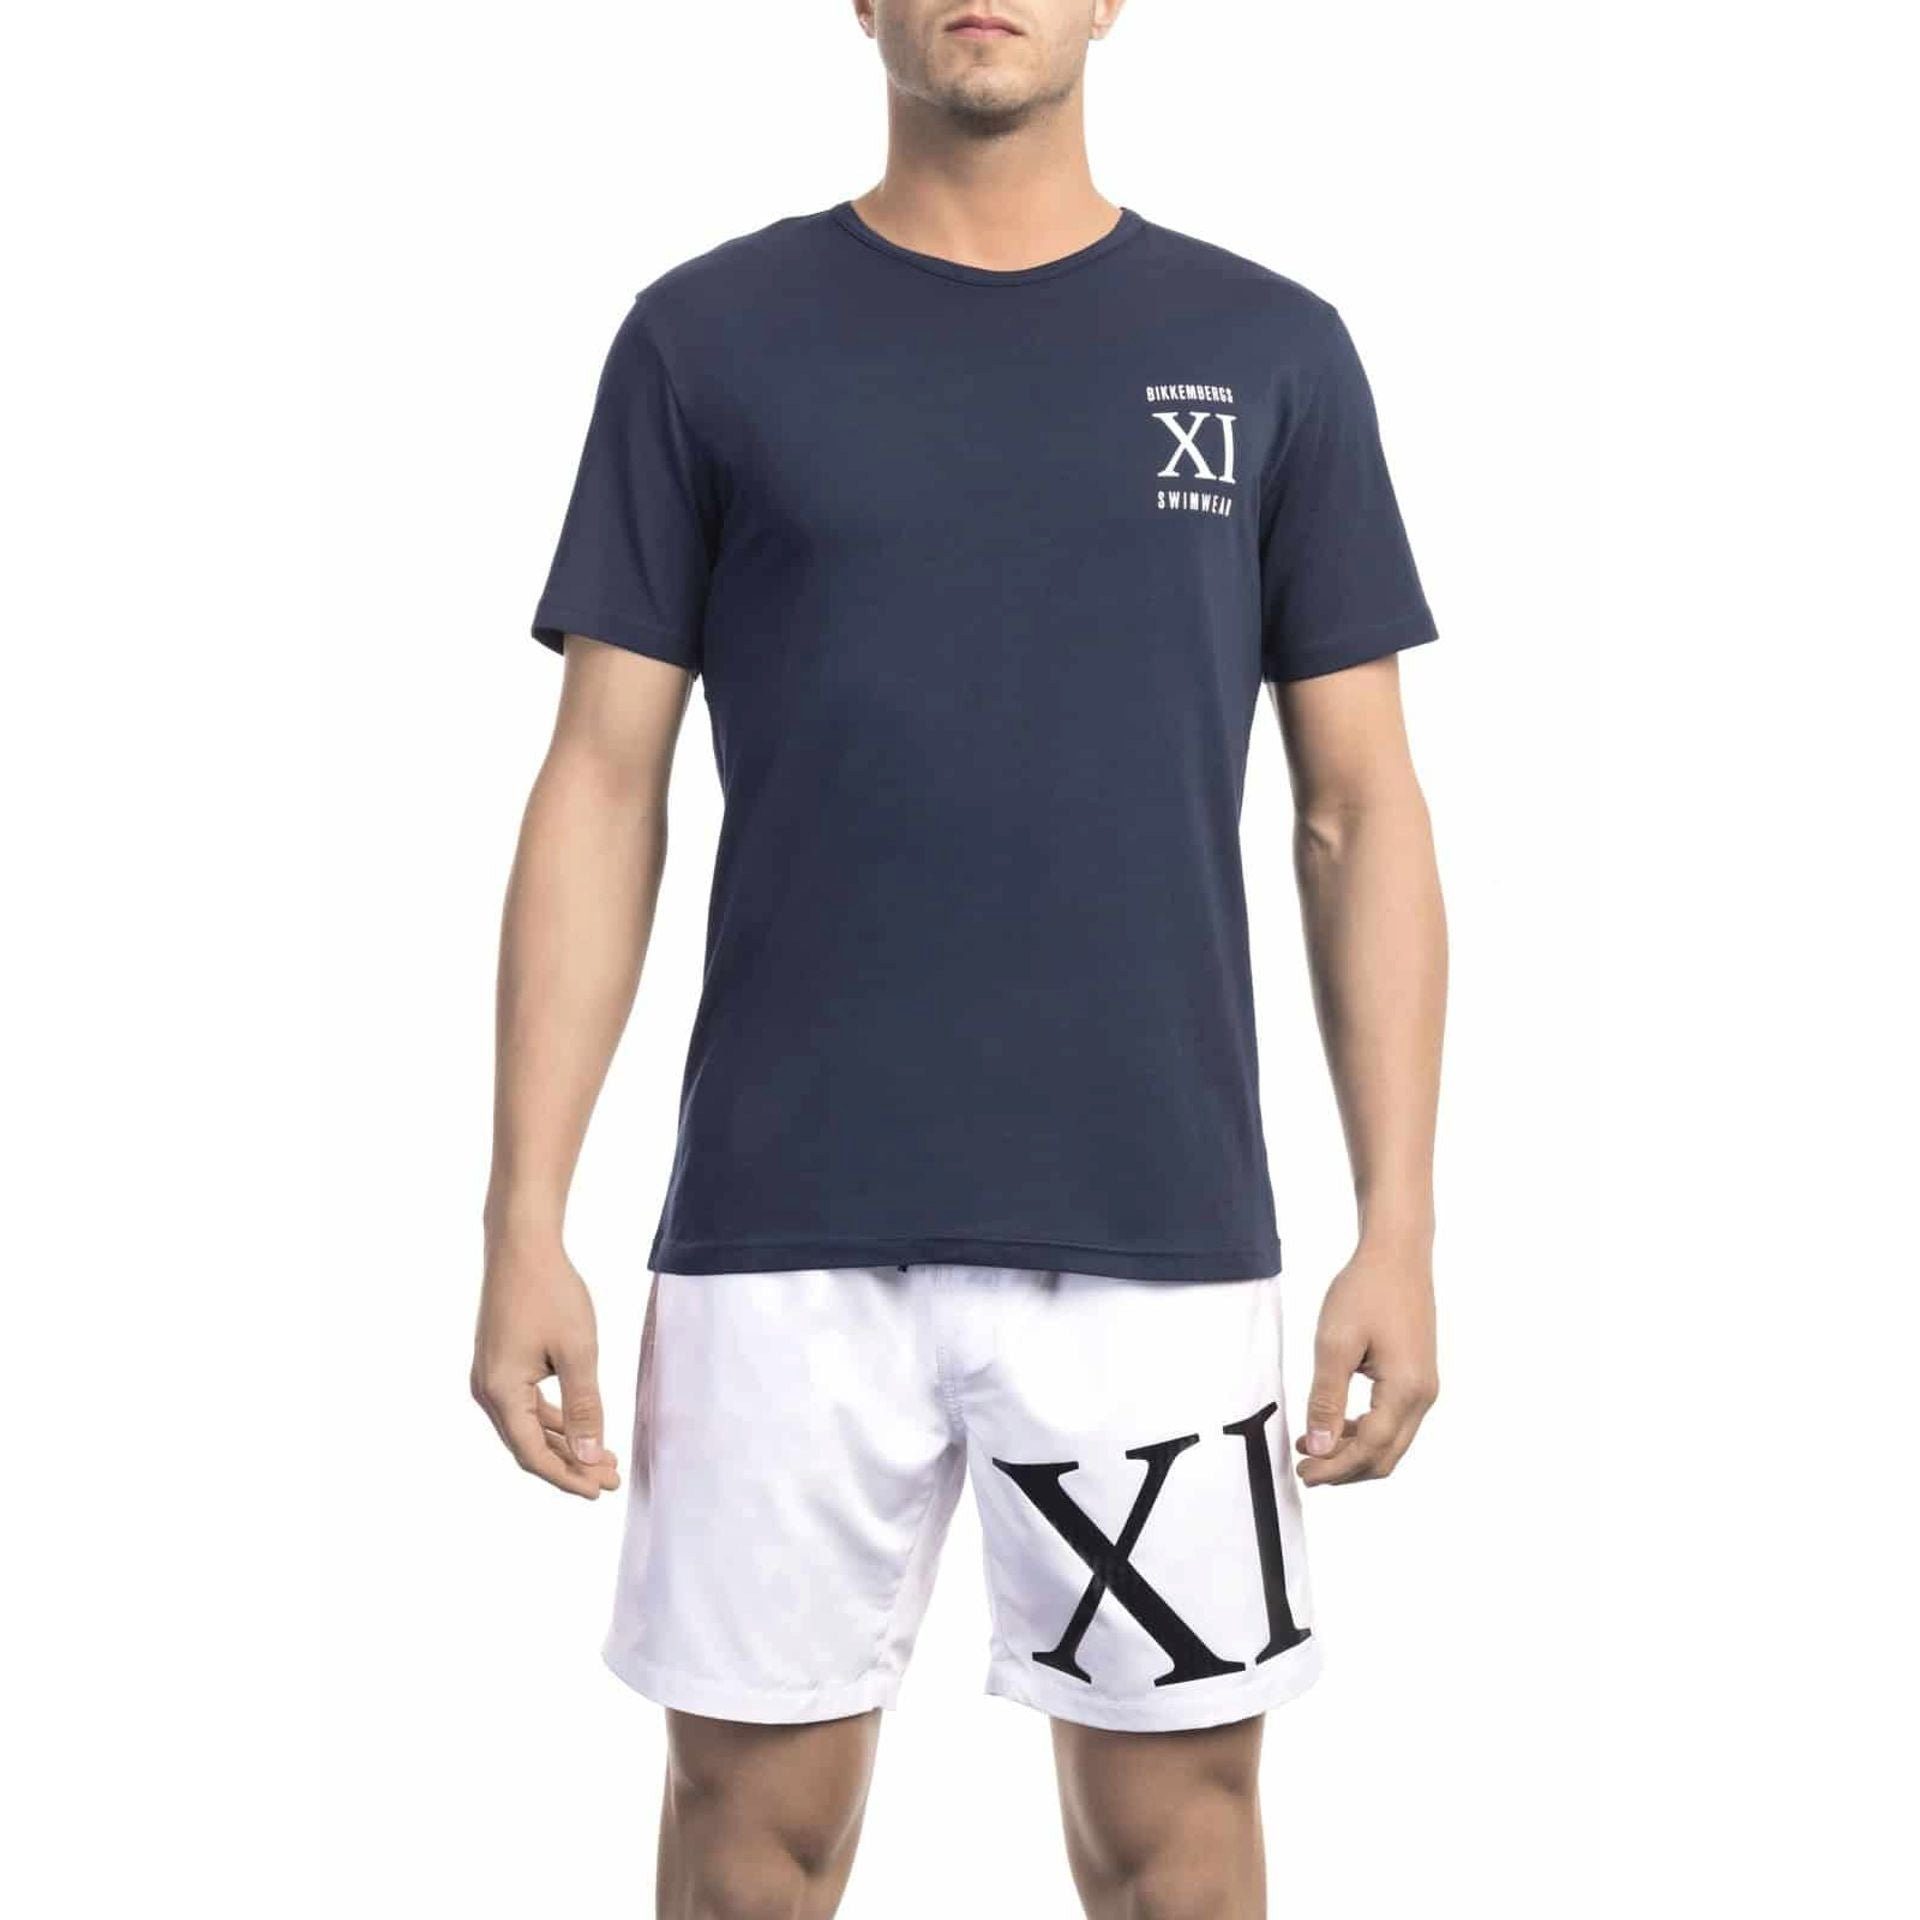 BKK1MTS05, Bikkembergs 2023 T-Shirt Strandmode Bikkembergs Beachwear, Herren Navy Trend T-Shirt,